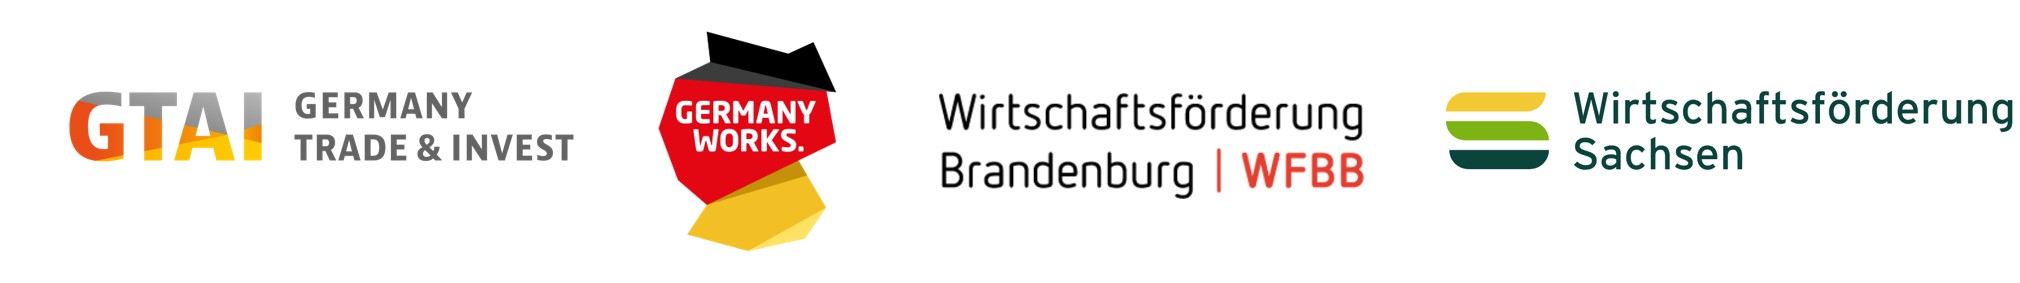 Partnerlogos Clustervermarktung: GTAI | Germany Works | WFBB | Wirtschafsförderung Sachsen